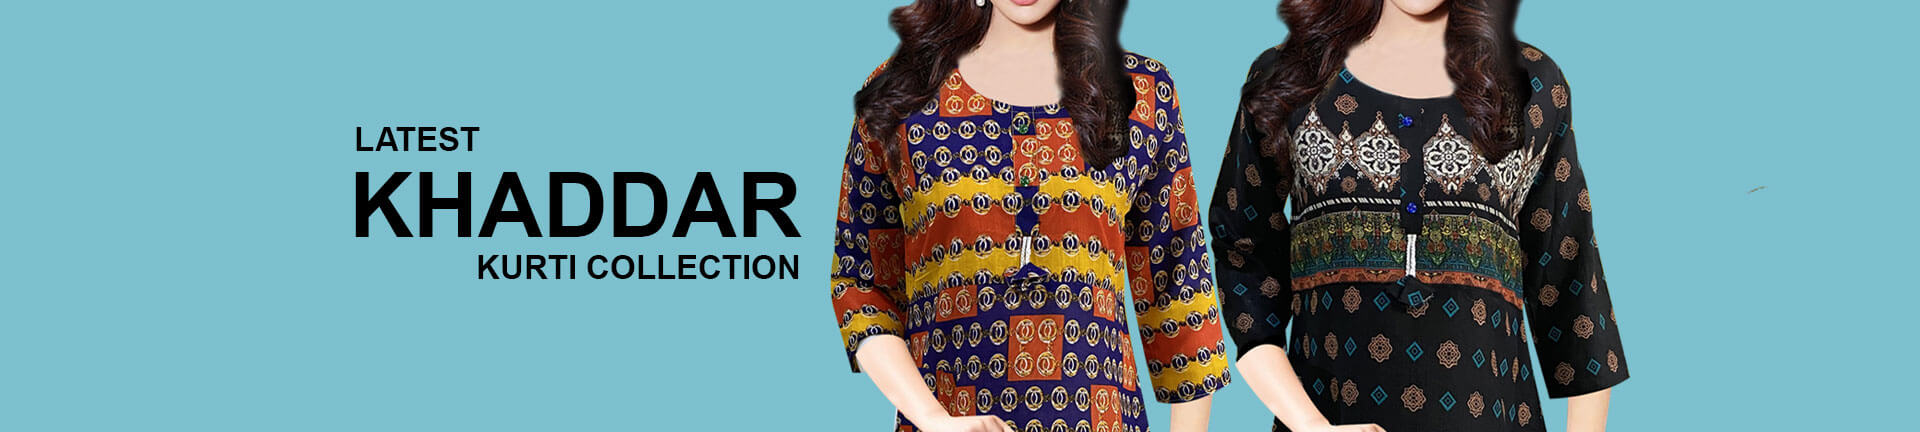 Buy Stitched Kurtis Khaddar @ best Price Online in Pakistan